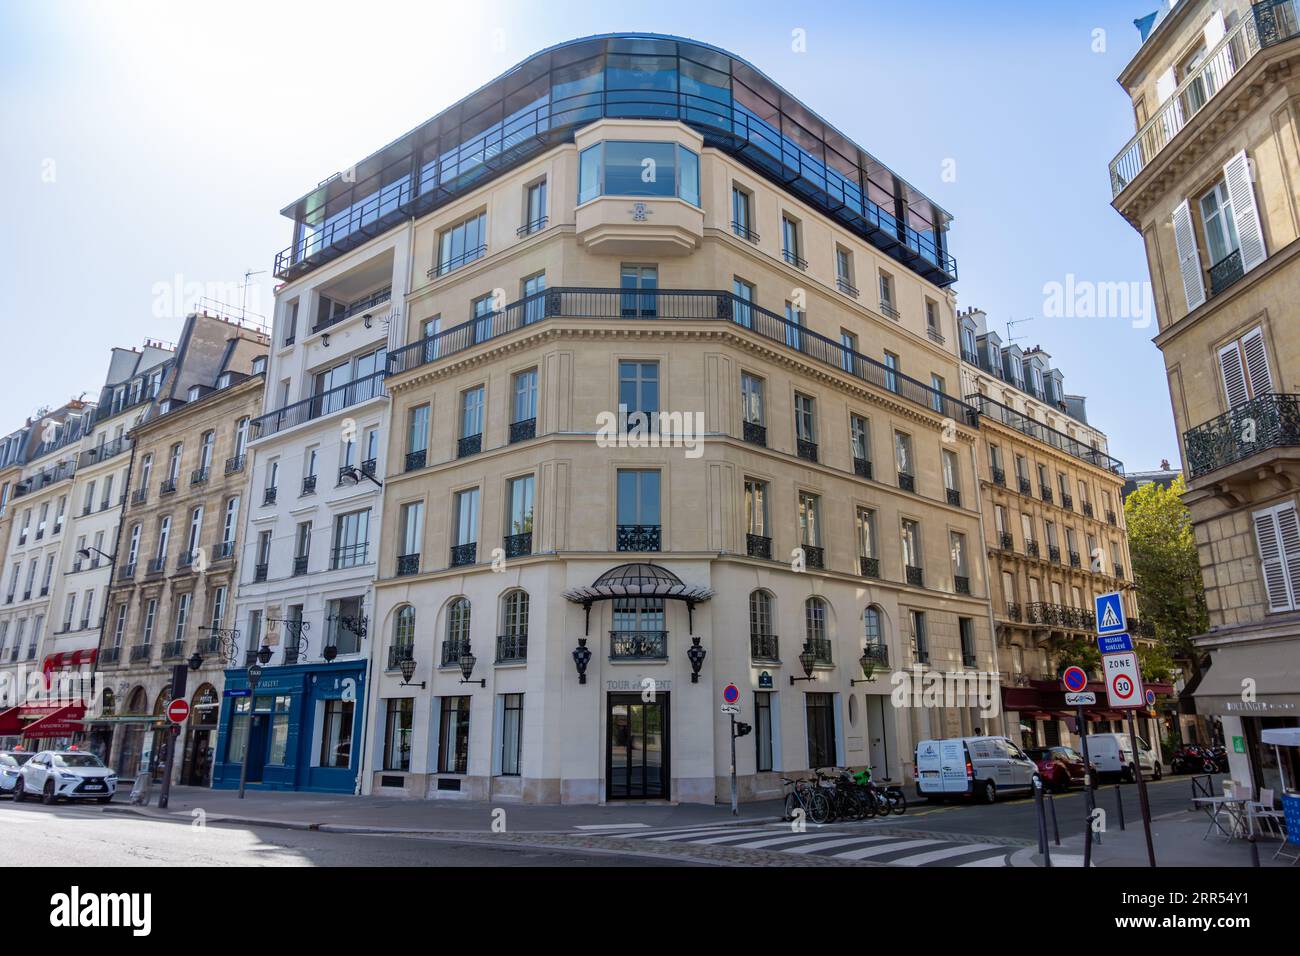 Exterior view of the building housing La Tour d'Argent, a famous French gourmet restaurant located on Quai de la Tournelle, Paris, France Stock Photo